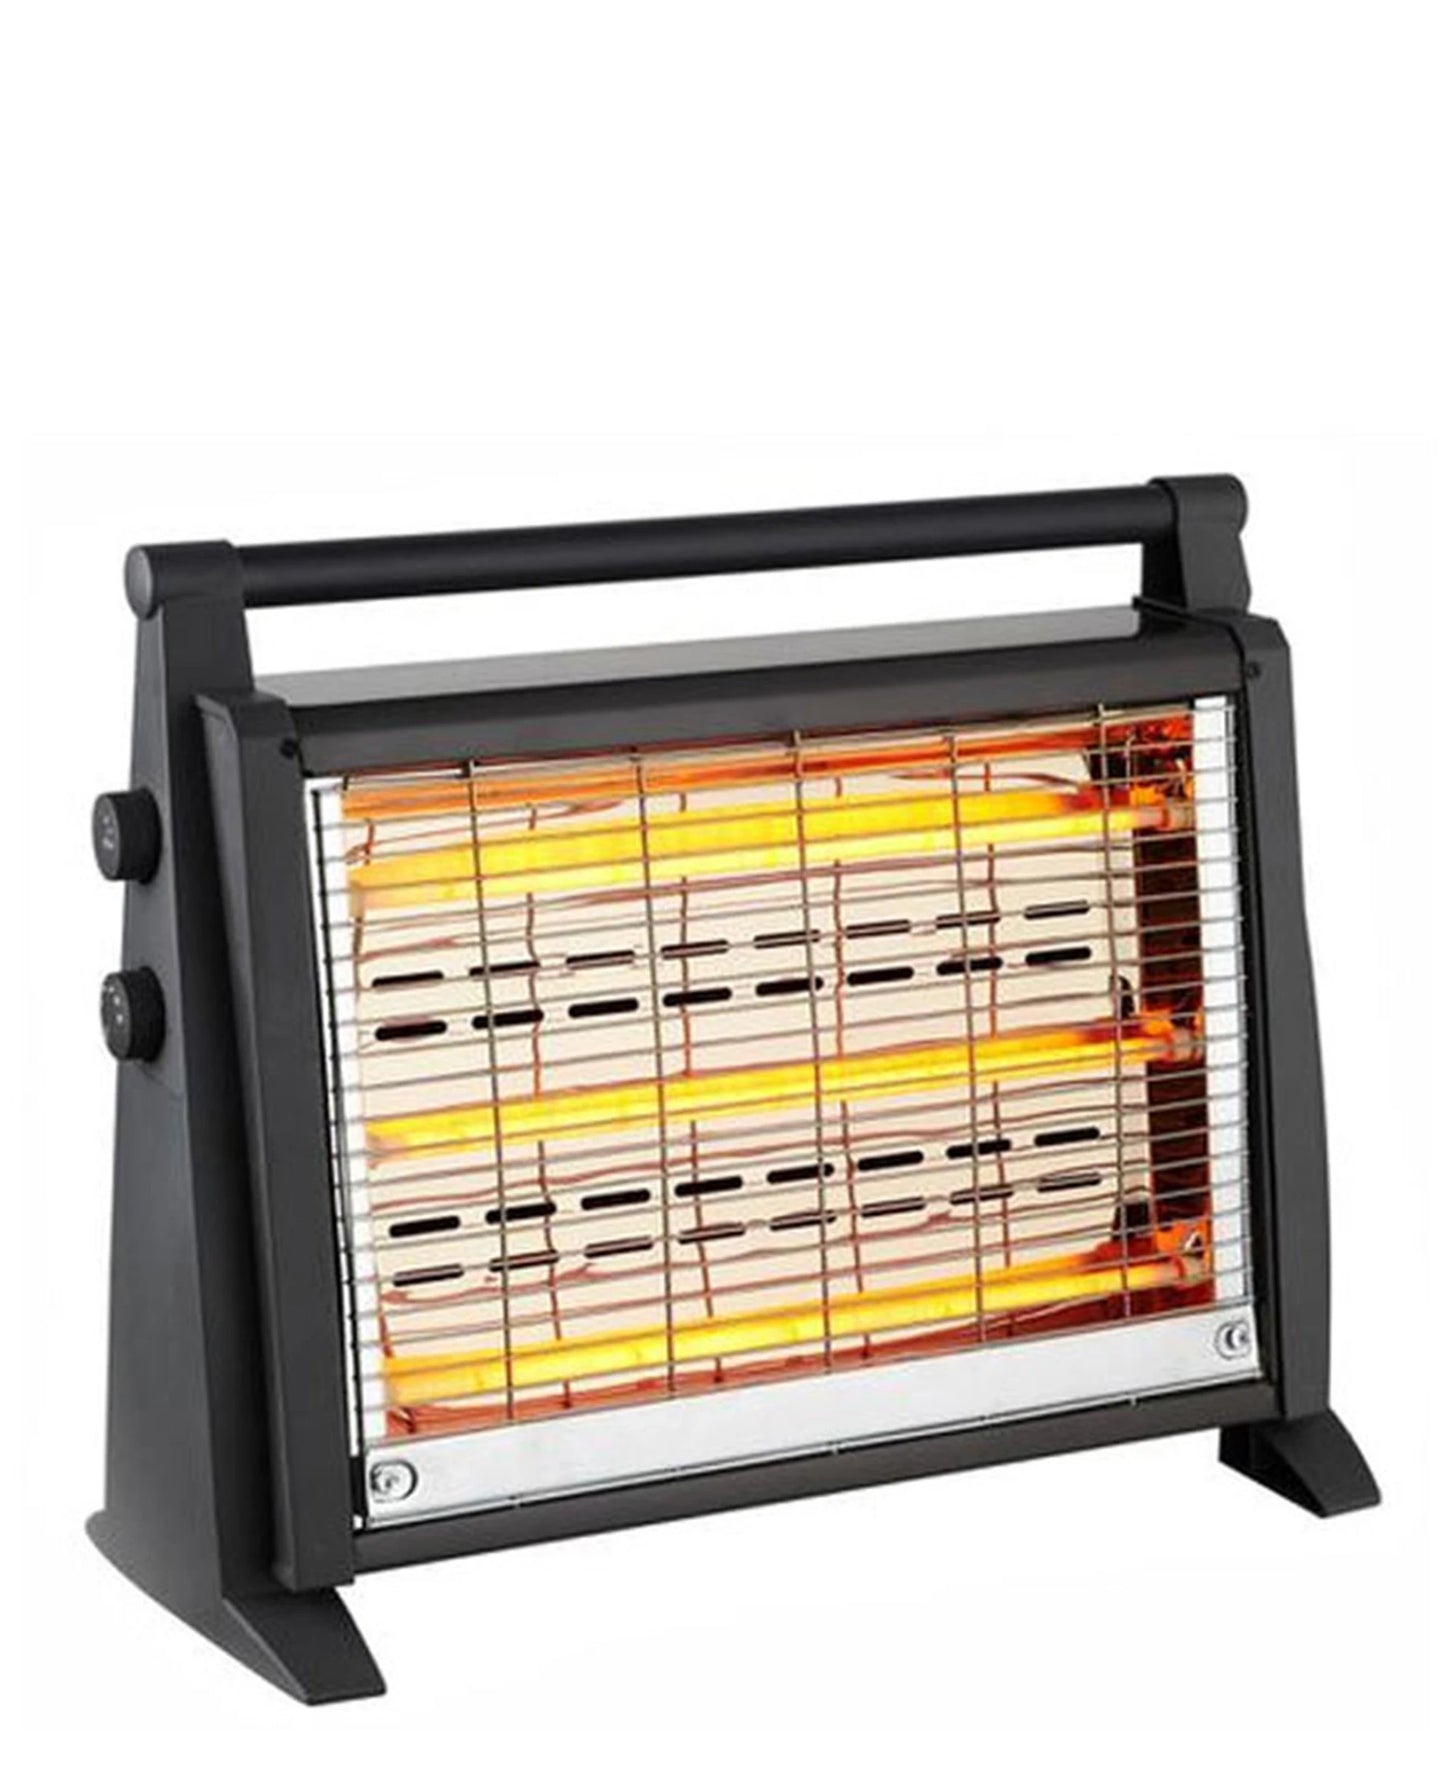 Goldair Quartz Heater - Black